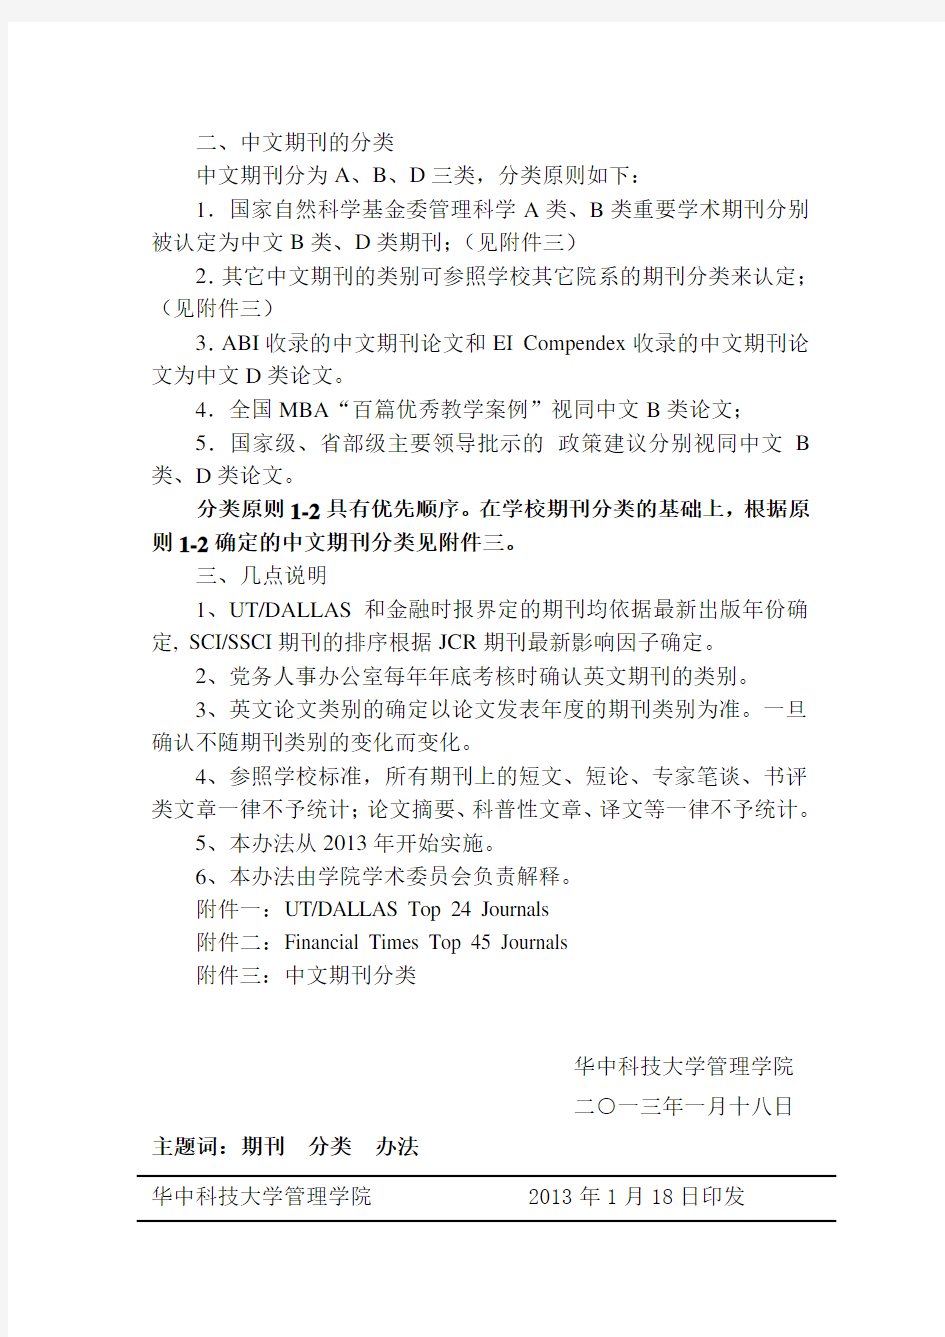 华中科技大学管理学院学术期刊分类办法